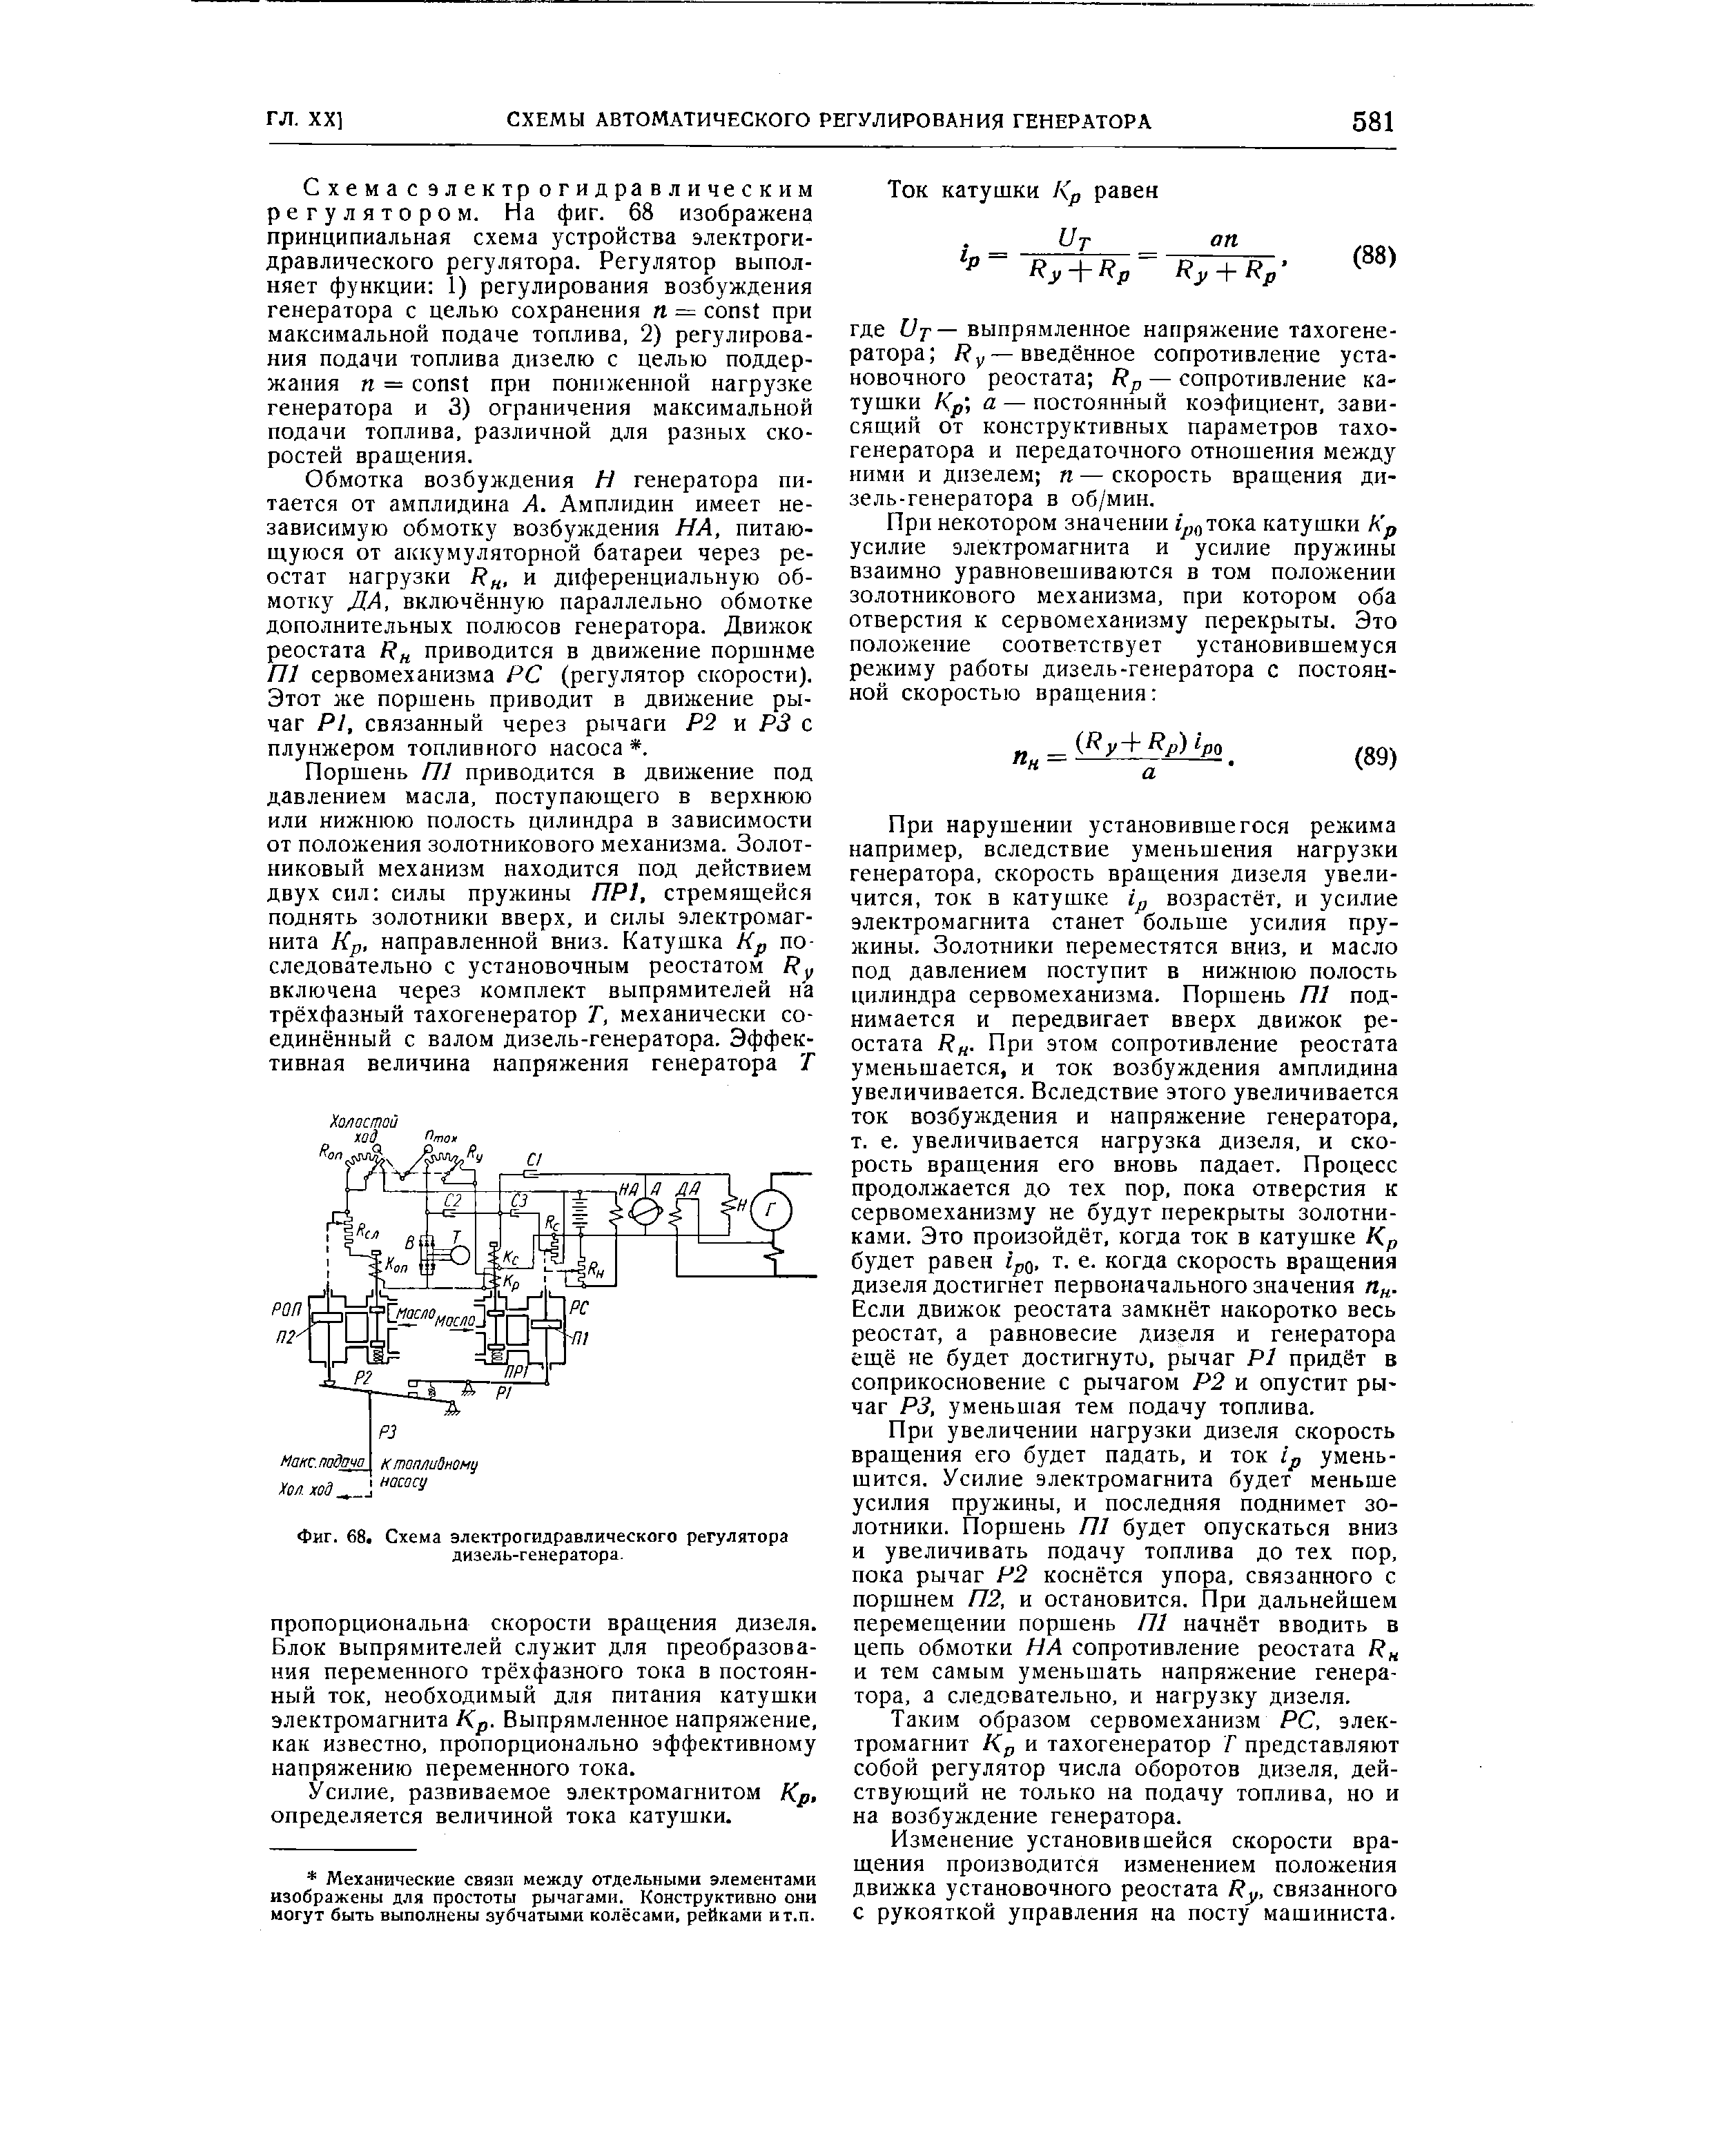 Фиг. 68. Схема электрогидравлического регулятора дизель-генератора.
